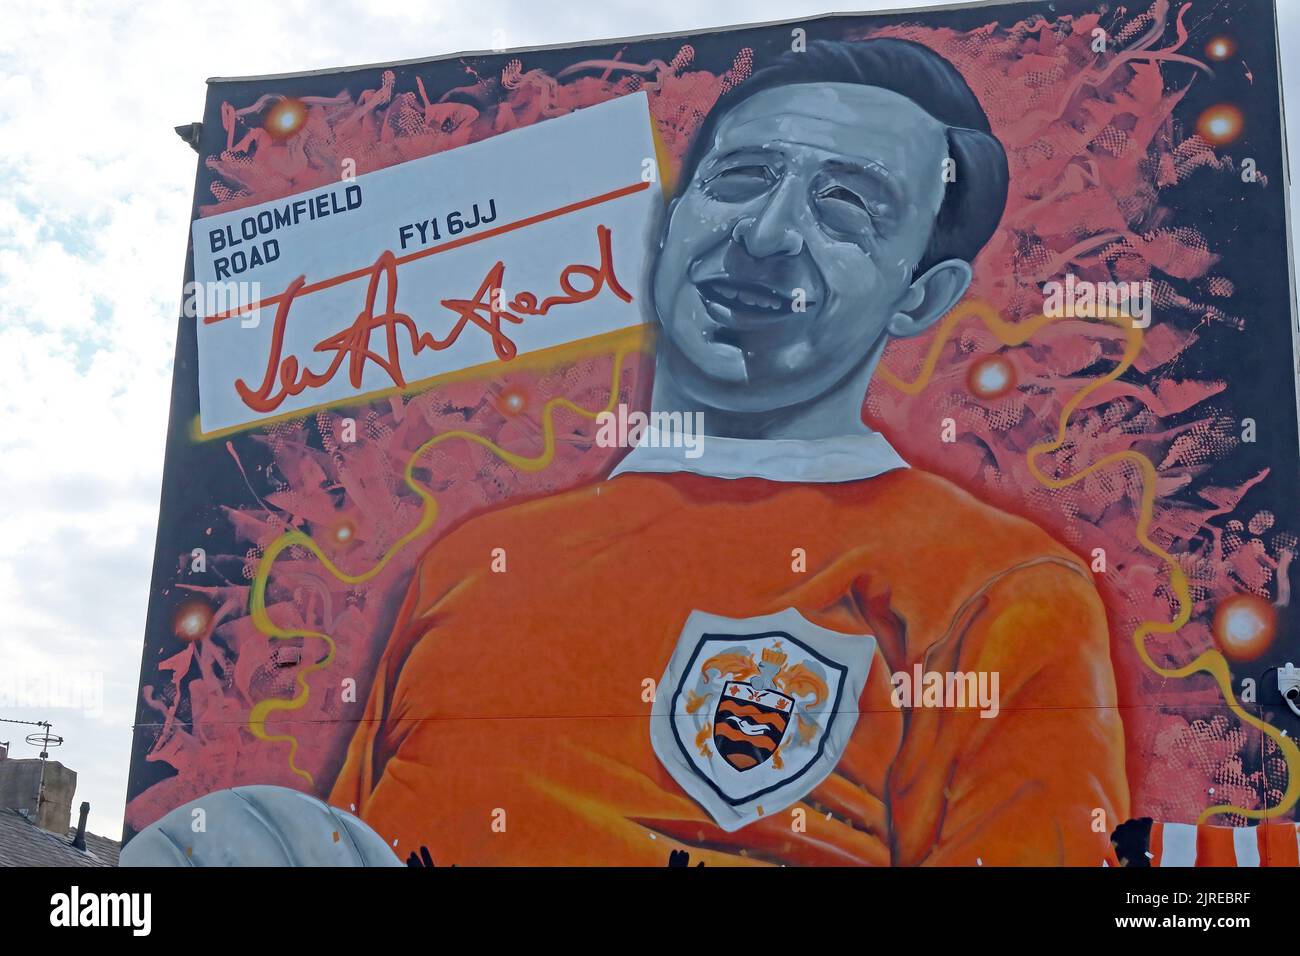 Jimmy Armfield (James Christopher Armfield) peint la peinture murale à Bloomfield Road, Blackpool, Lancs, Angleterre, Royaume-Uni, FY1 6JJ Banque D'Images